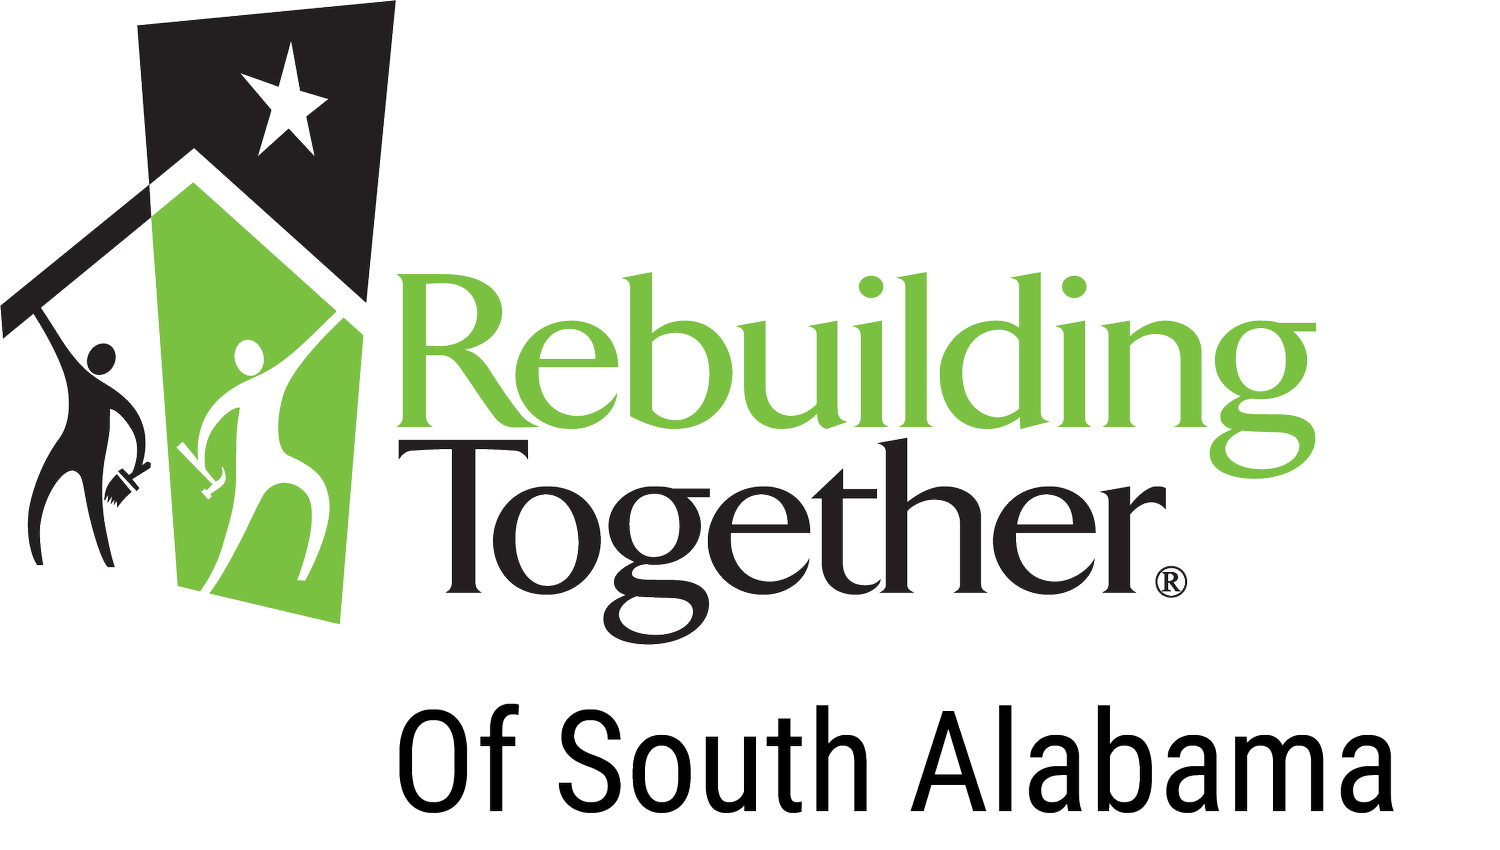 Rebuilding Together of South Alabama